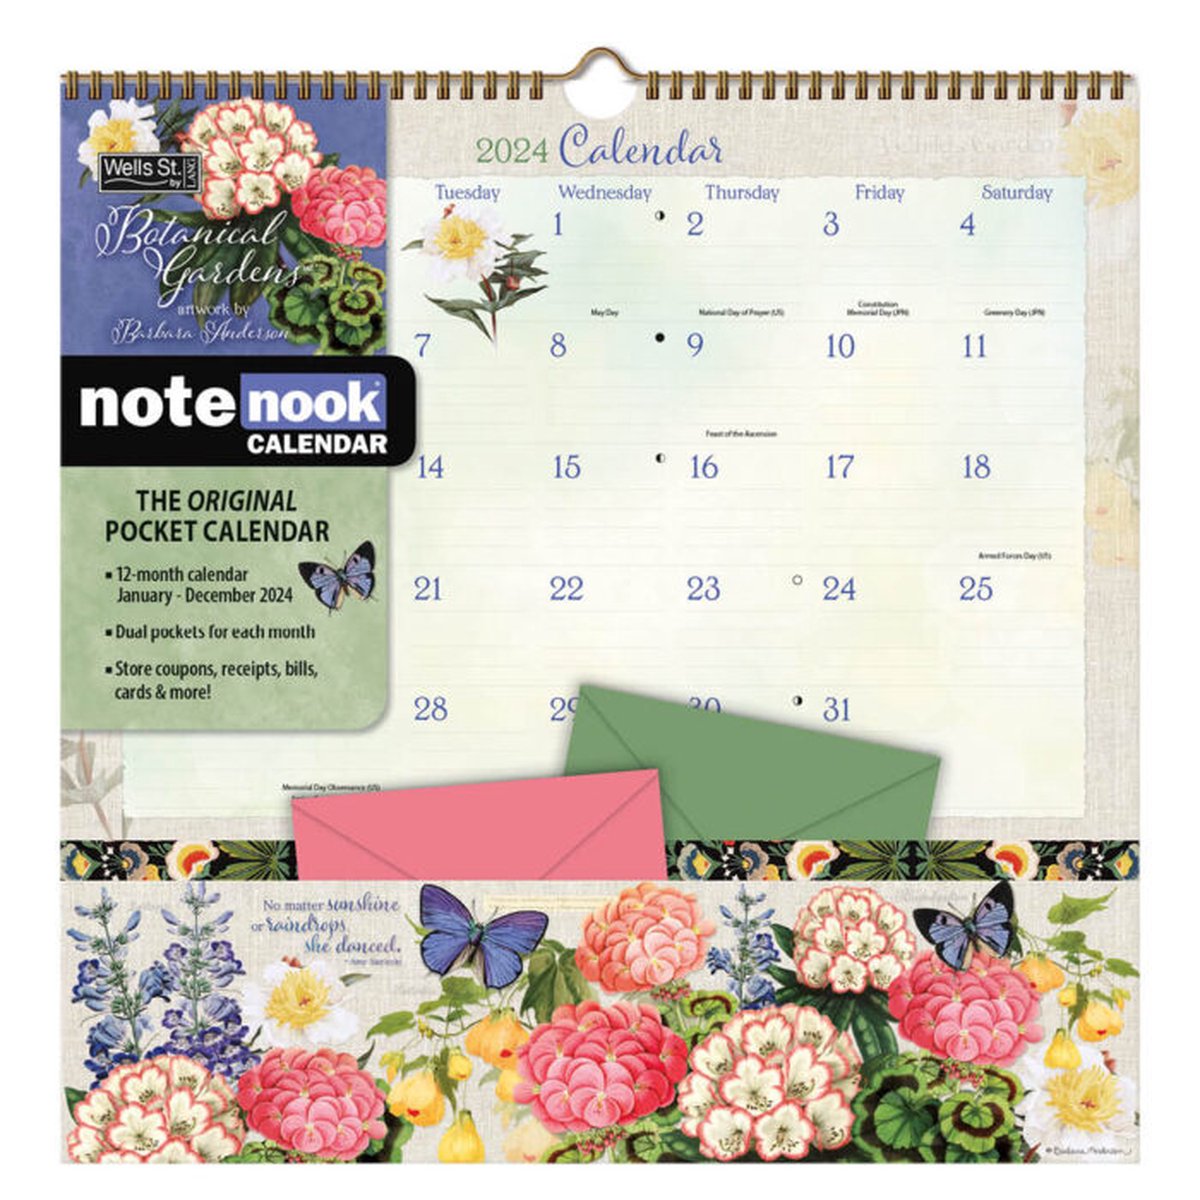 Botanical Gardens Pocket Note Nook Kalender 2024